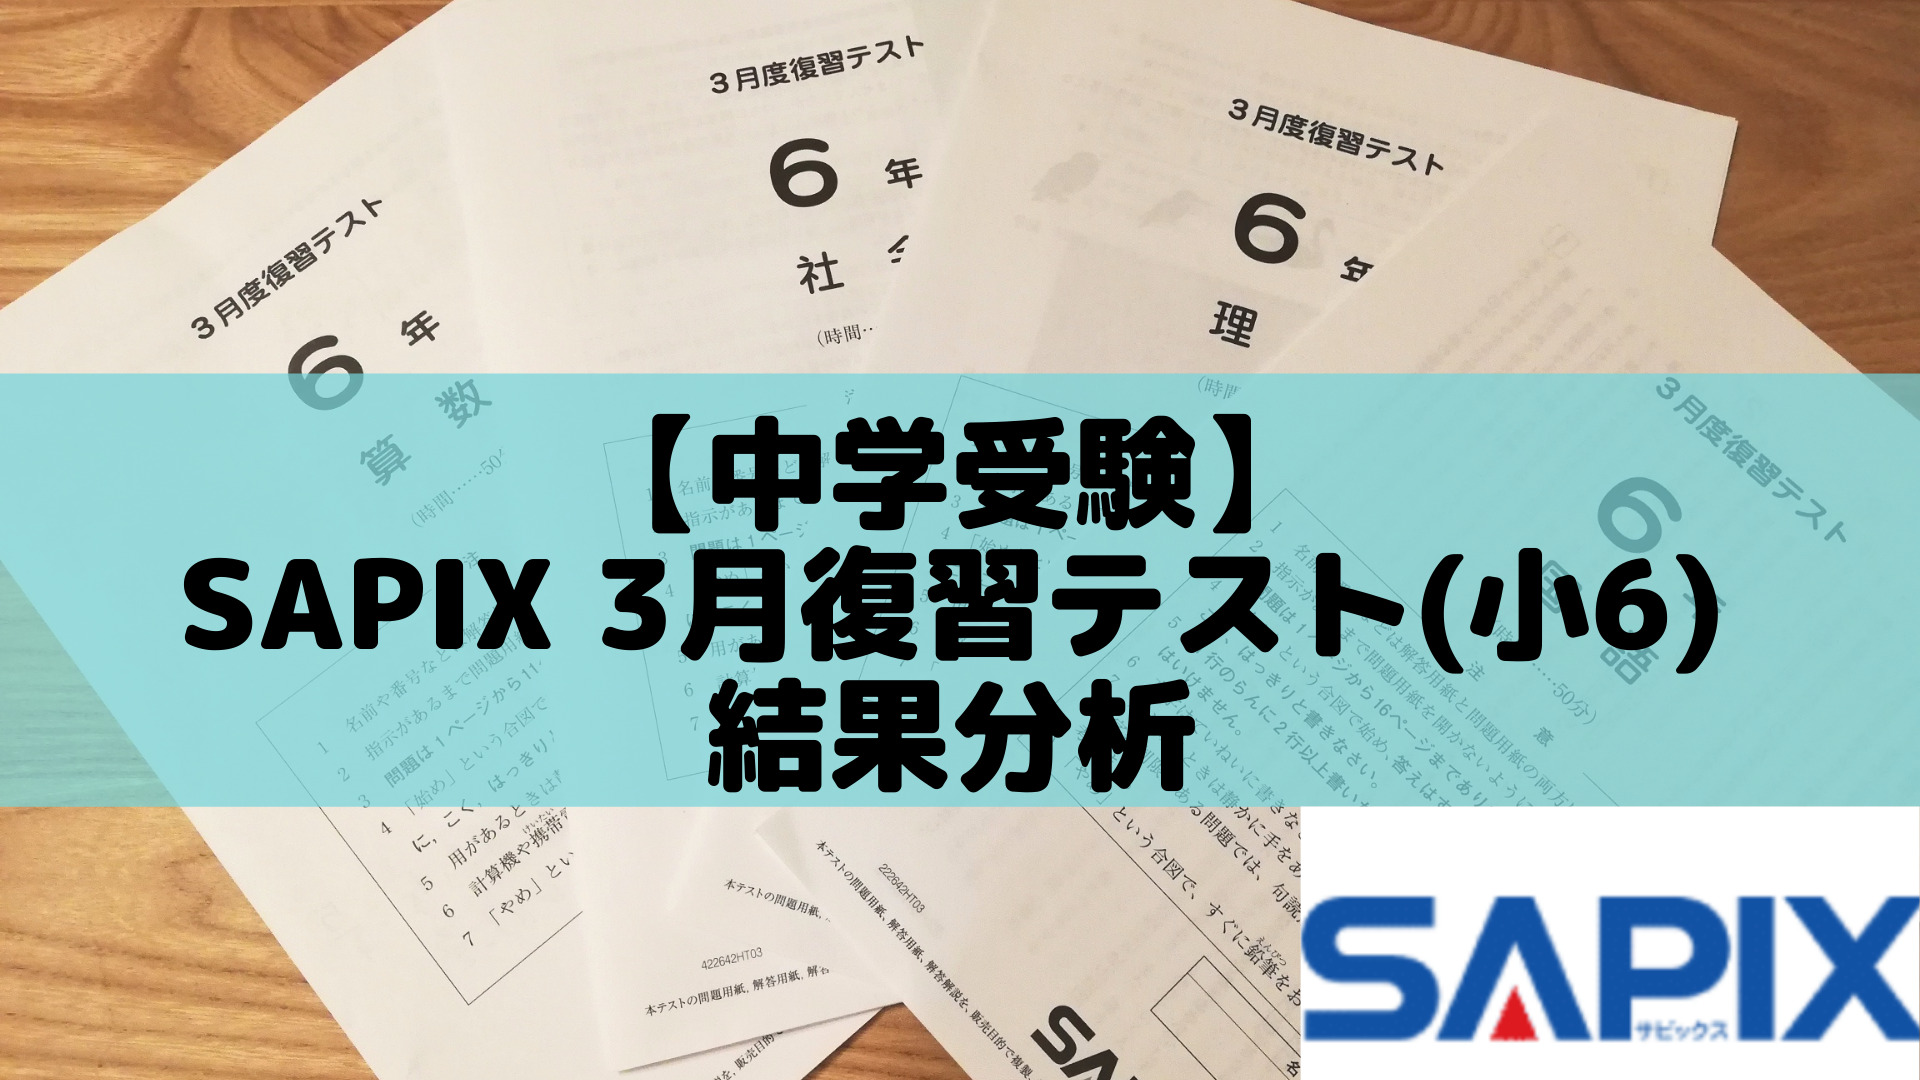 中学受験】SAPIX 3月復習テスト(小6)結果分析 | ポチたま中学受験